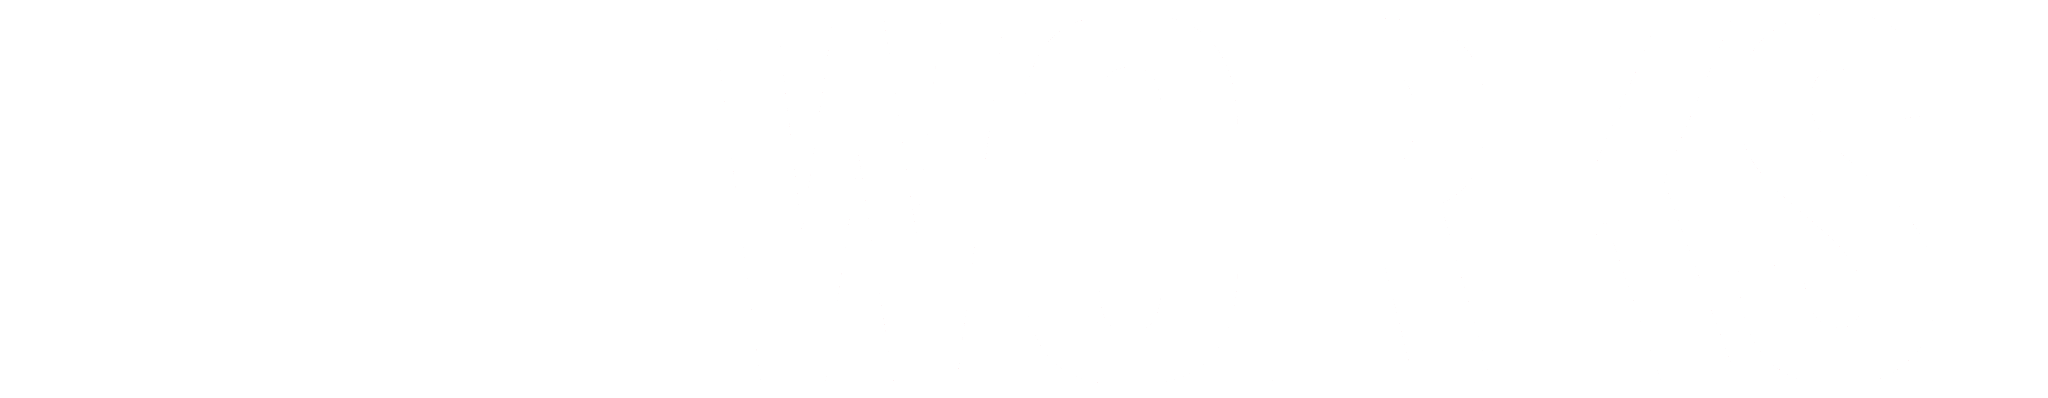 WyeWorks LLC logo